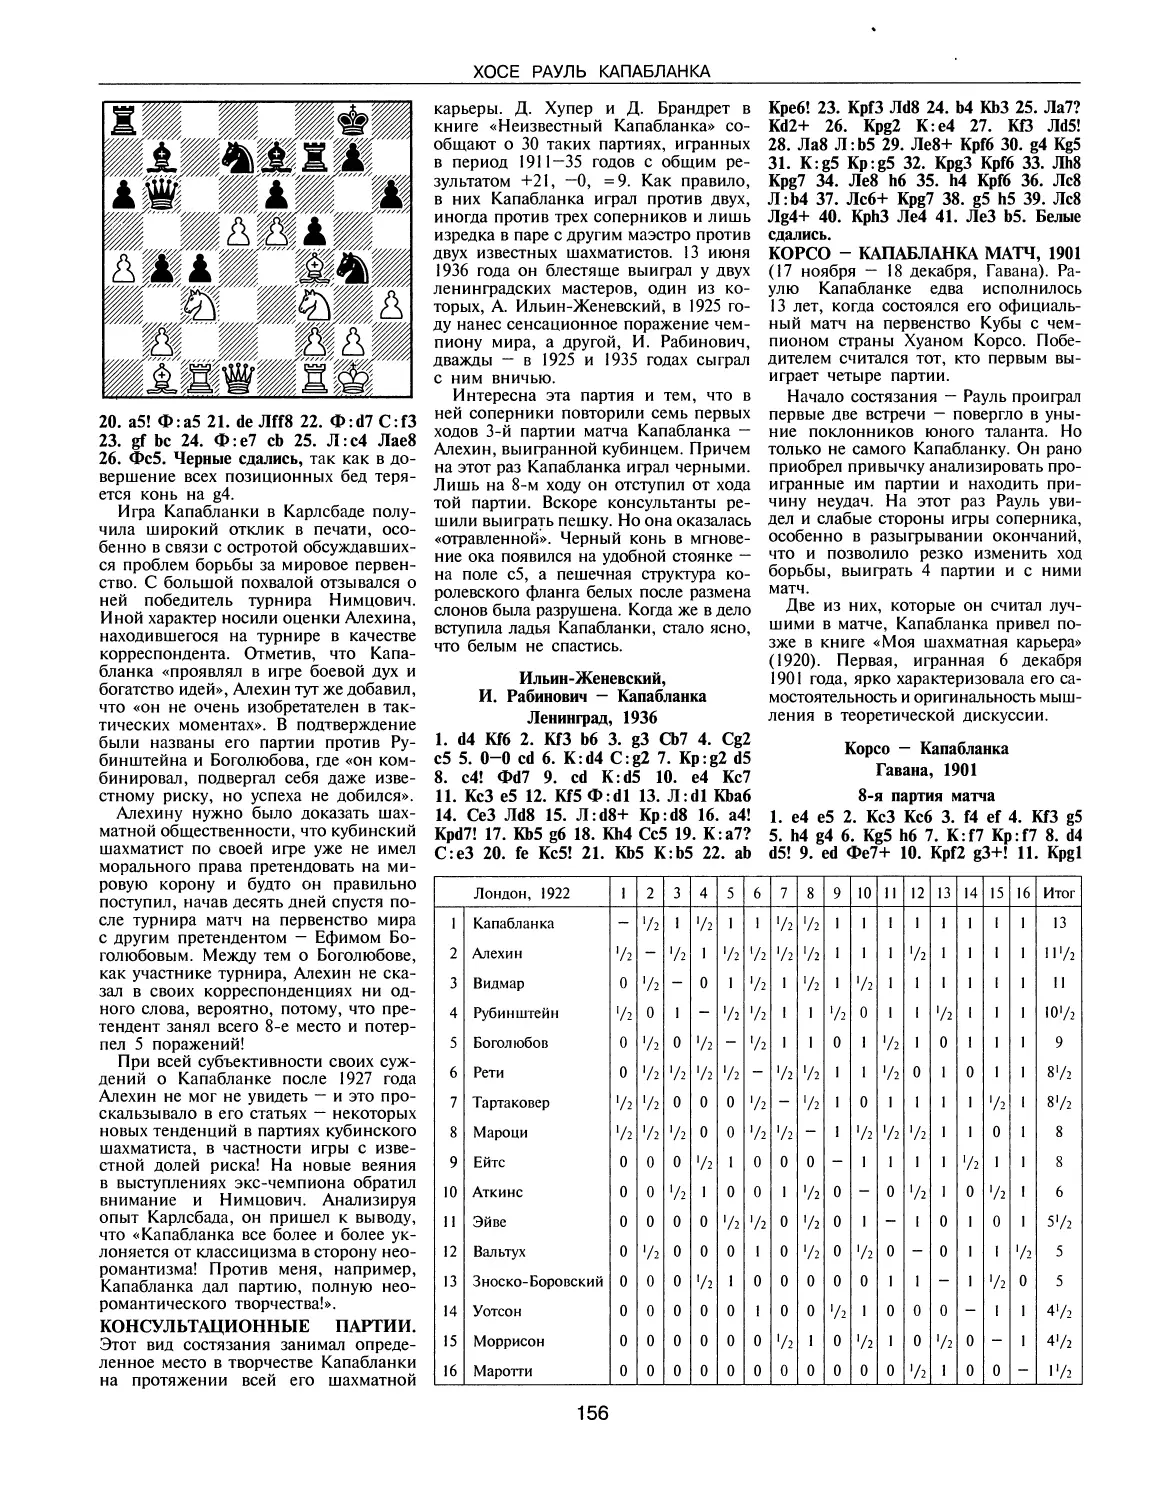 Консультационные партии
Корсо — Капабланка матч, 1901